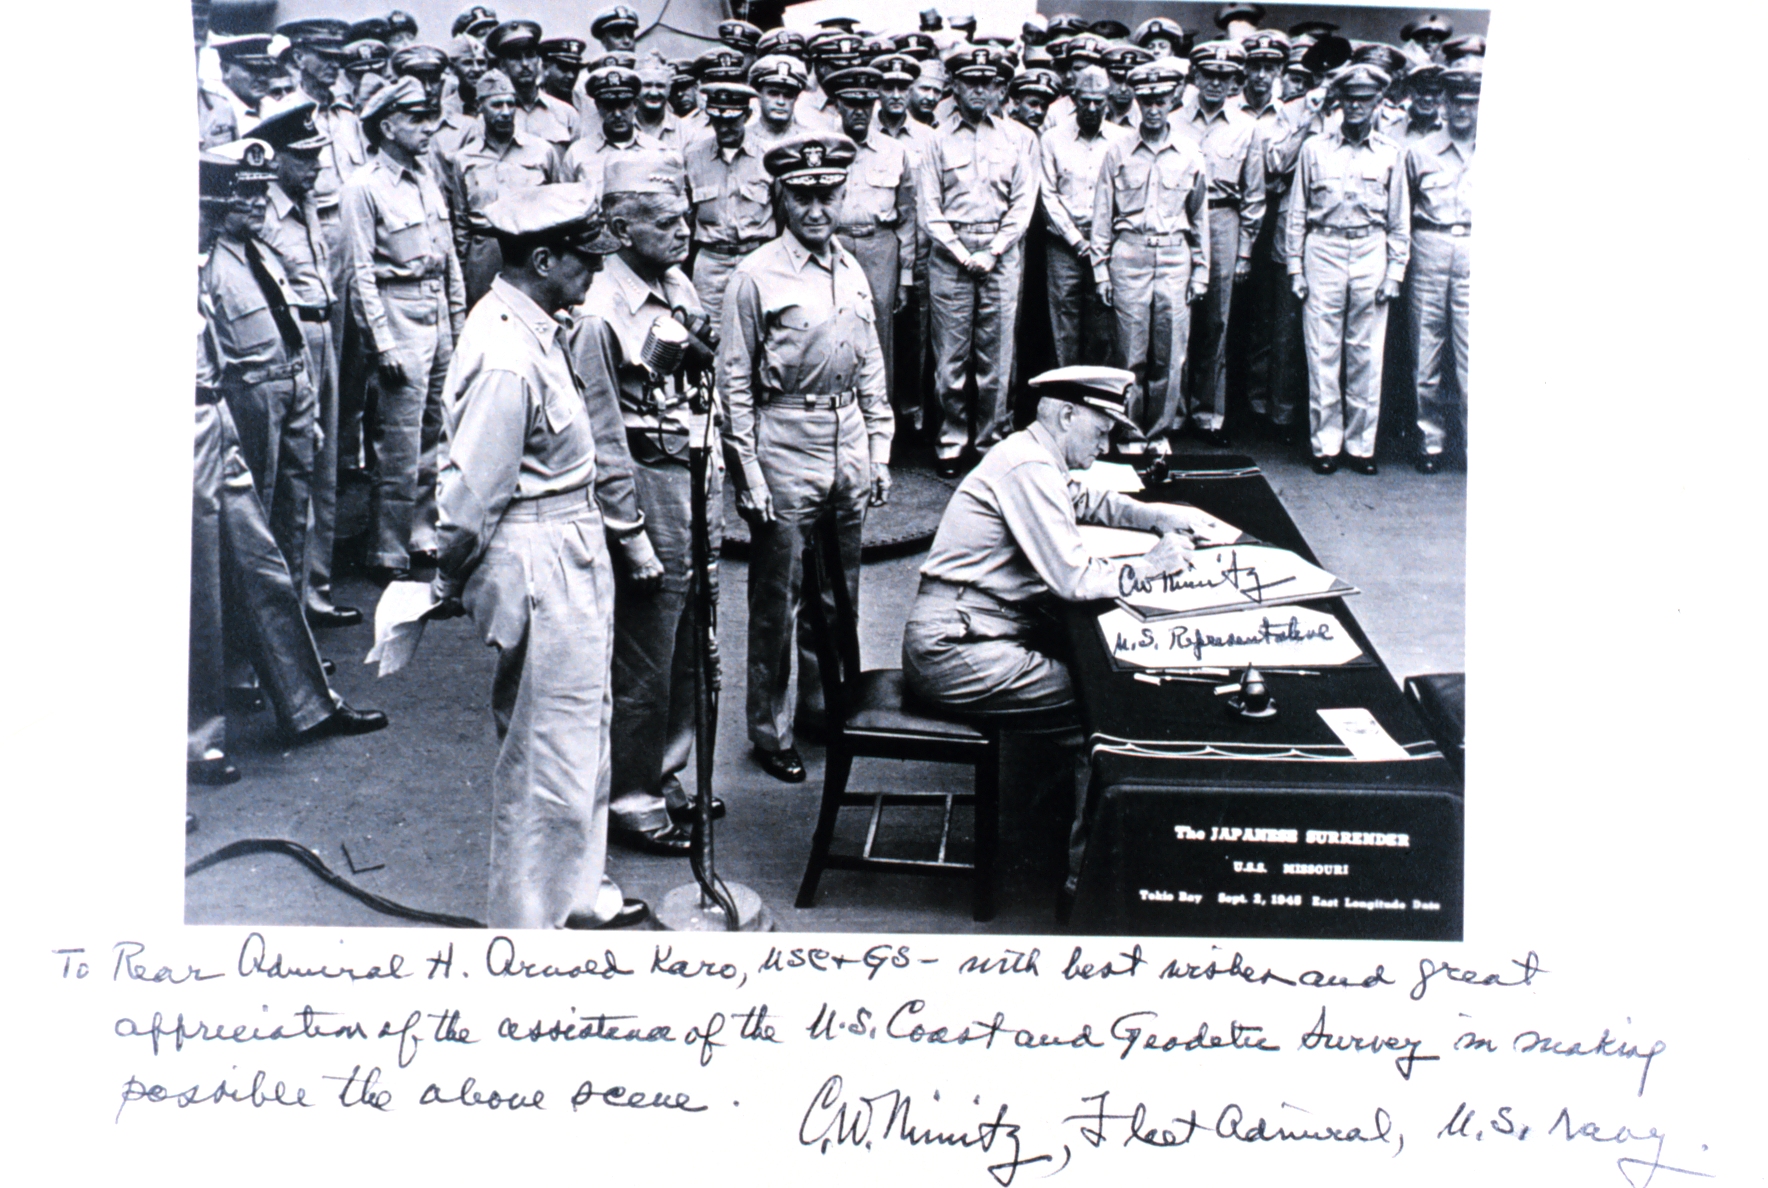 Adm. Nimitz inscribes photo, expresses appreciation for USC&GS contributions.